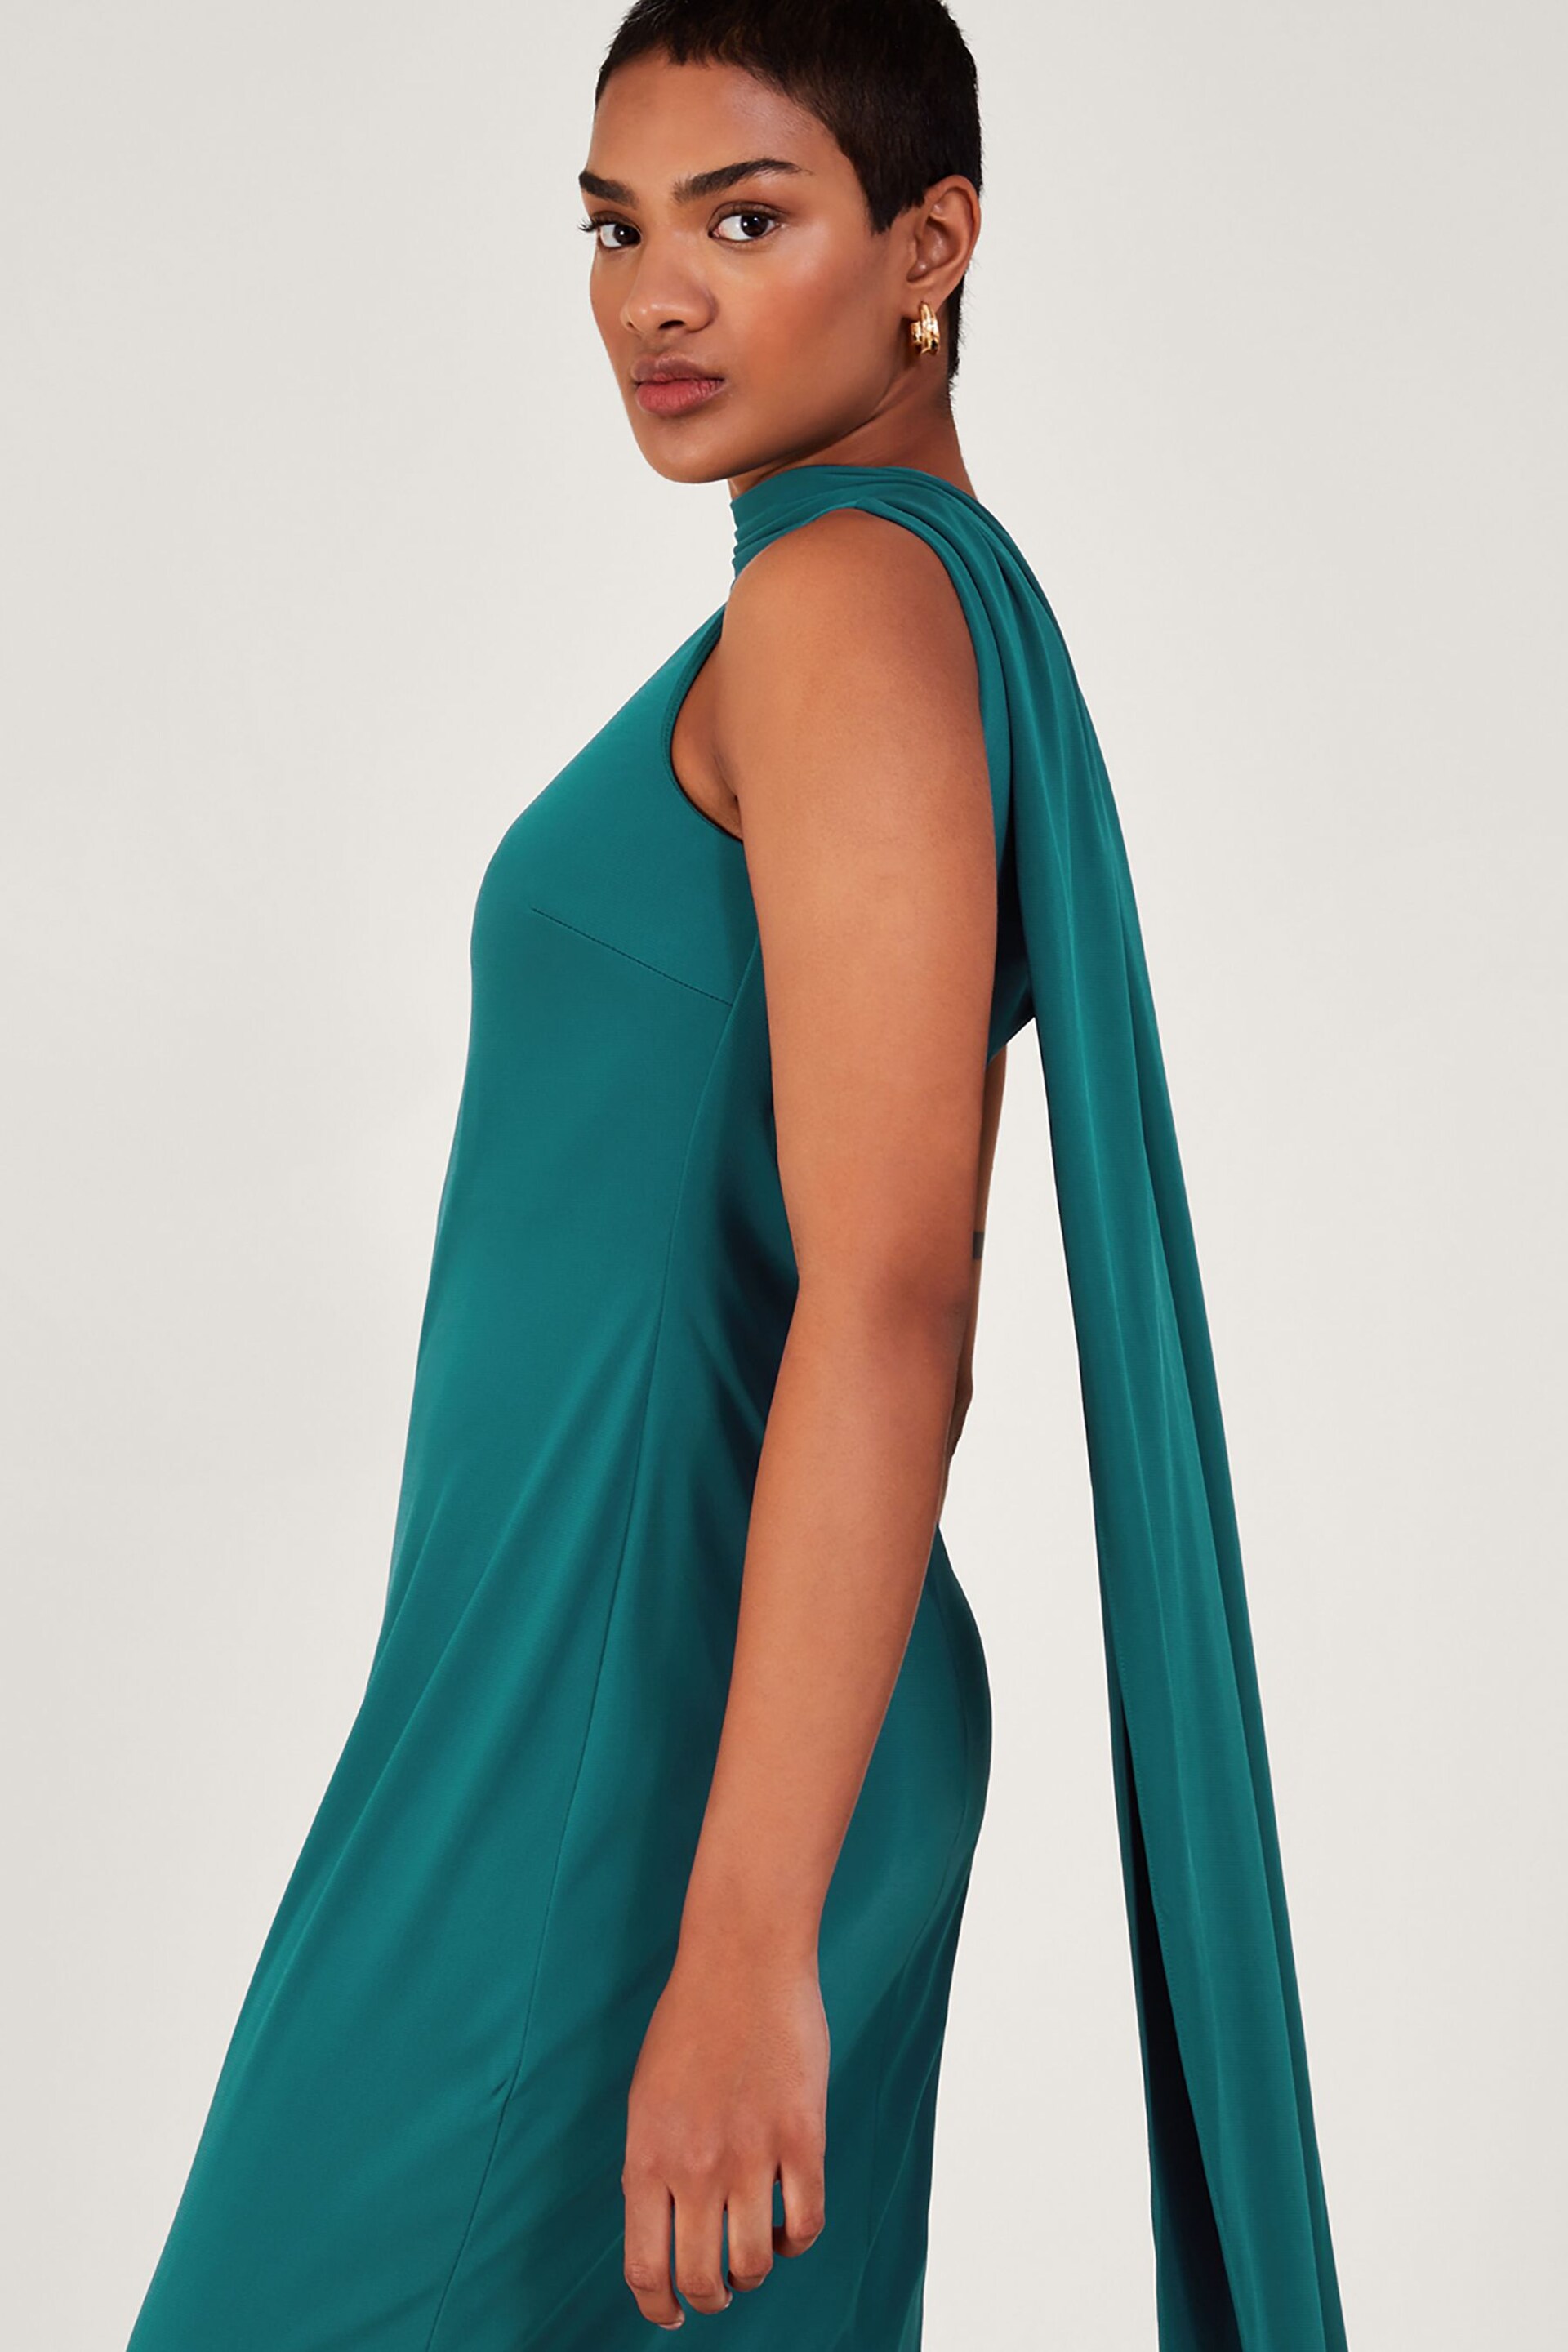 Monsoon Blue Maya Multiwear Dress - Image 3 of 5